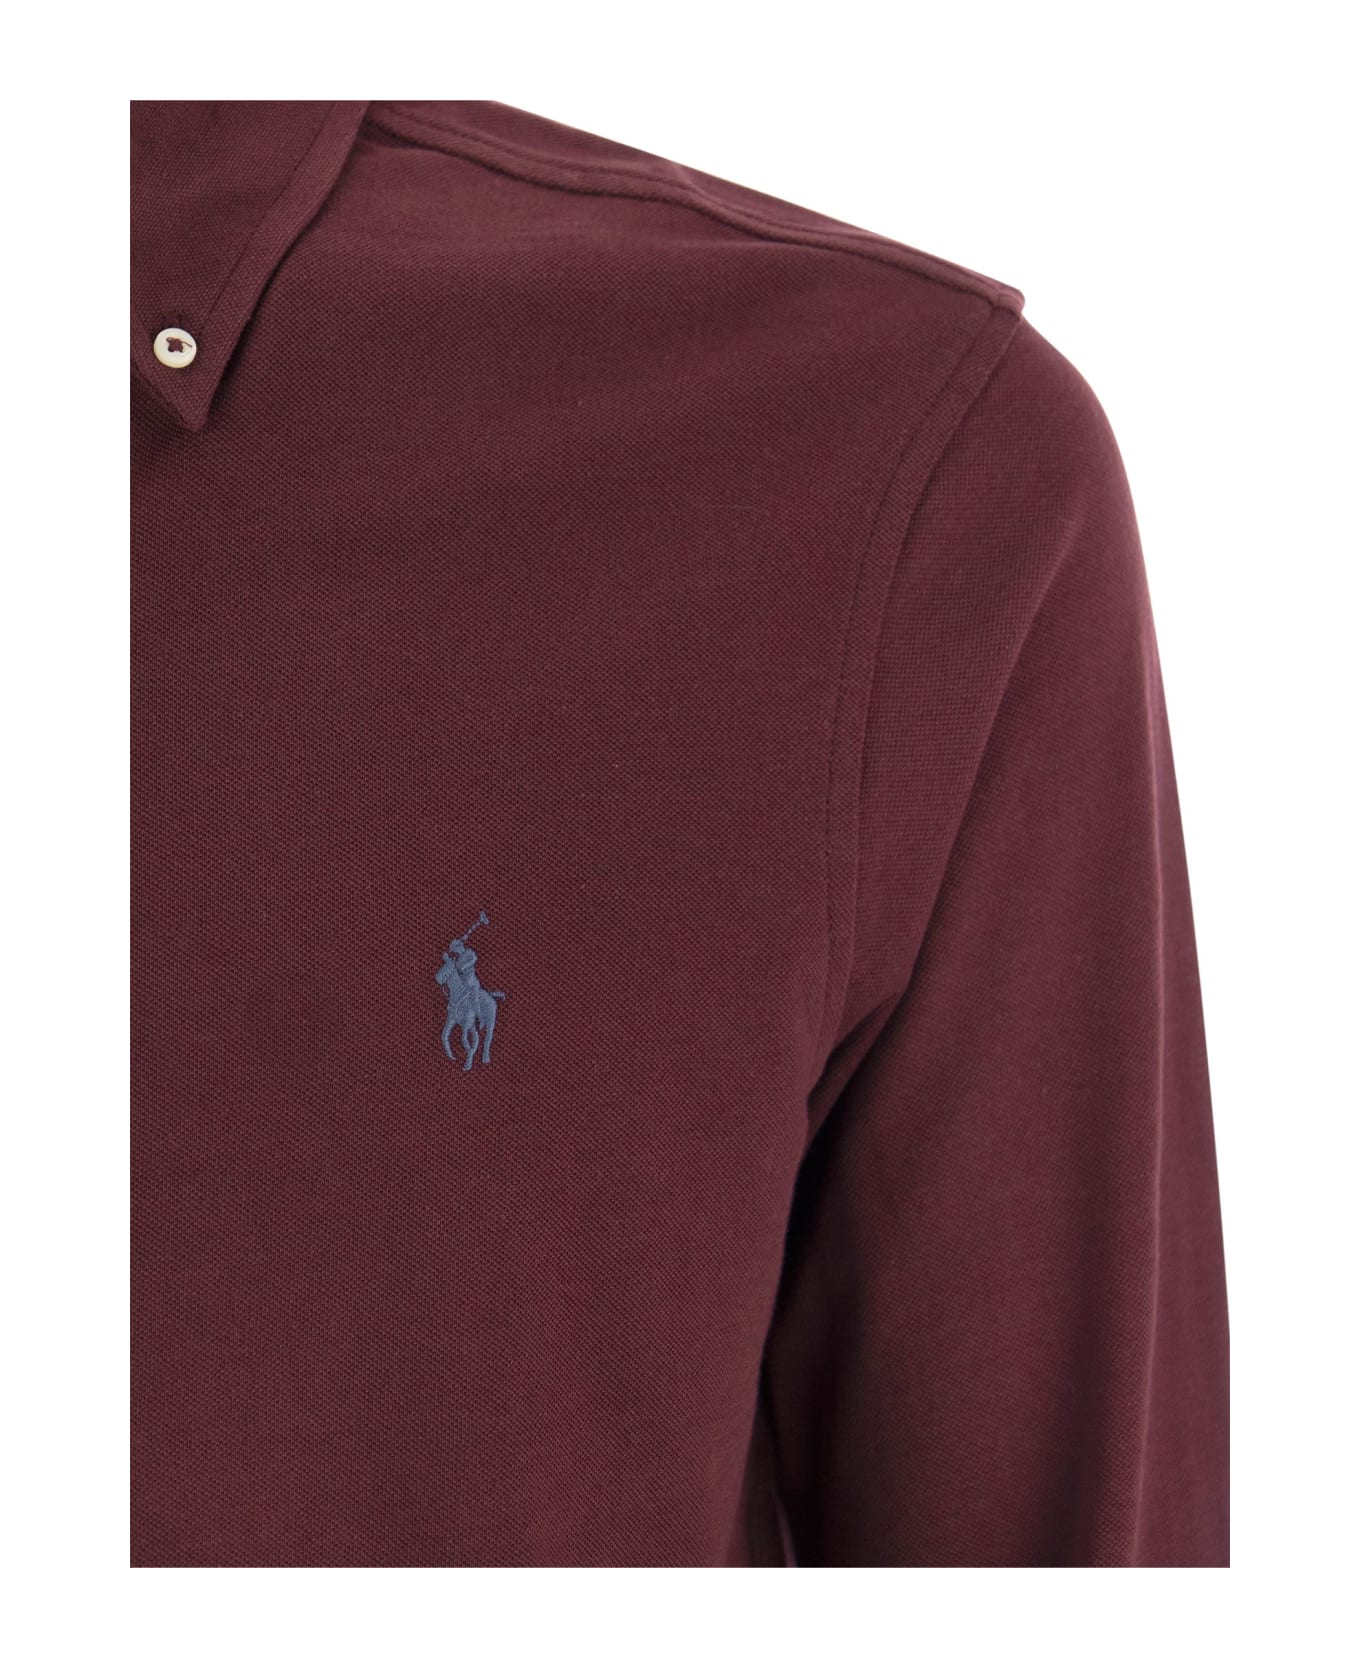 Polo Ralph Lauren Ultralight Pique Shirt - Bordeaux シャツ